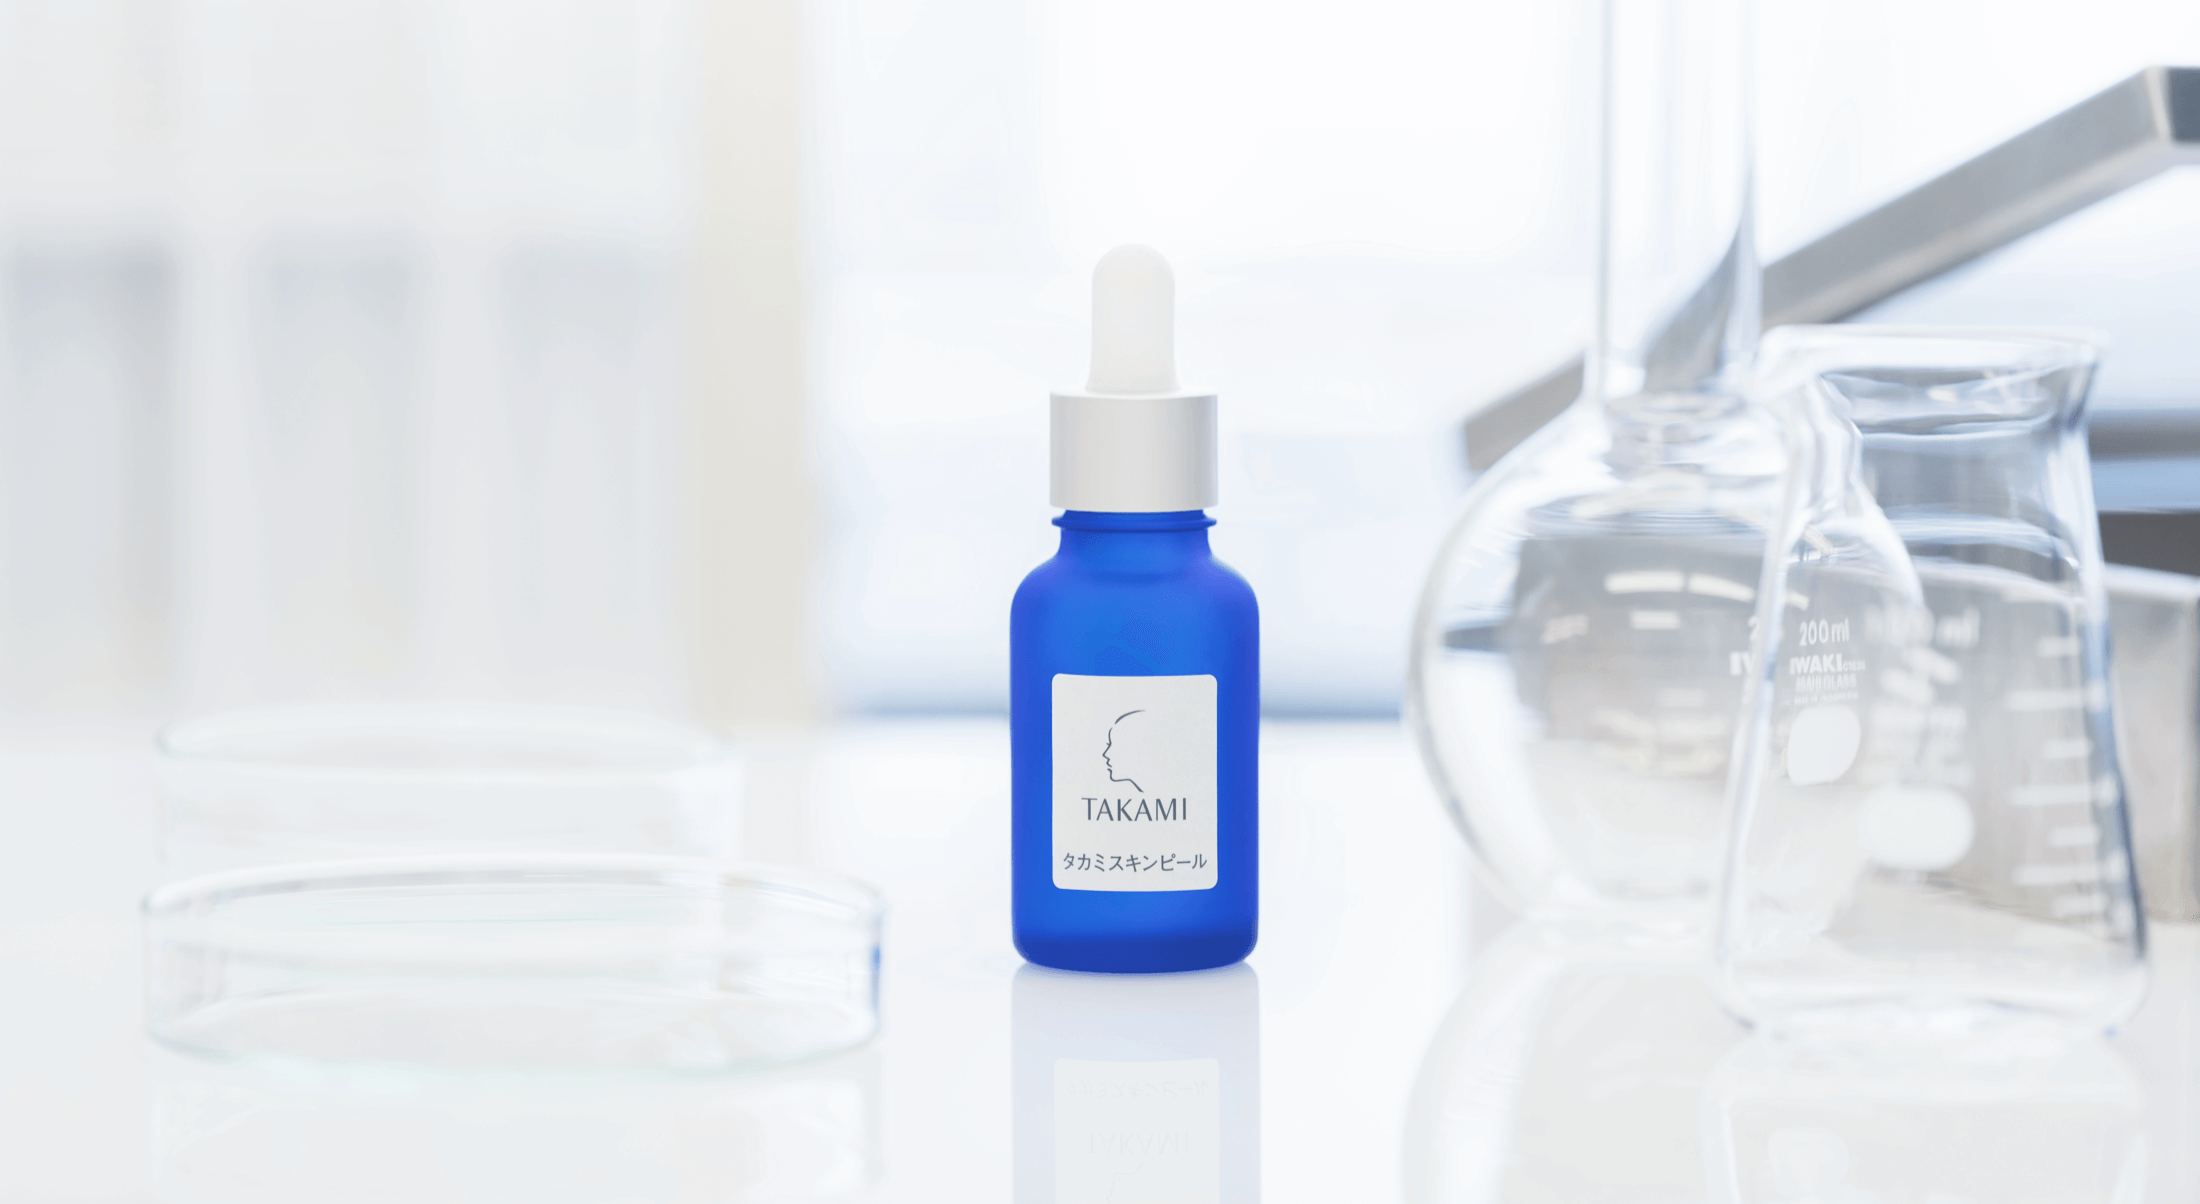 欧莱雅集团宣布收购“小蓝瓶”生产商日本护肤品公司 Takami